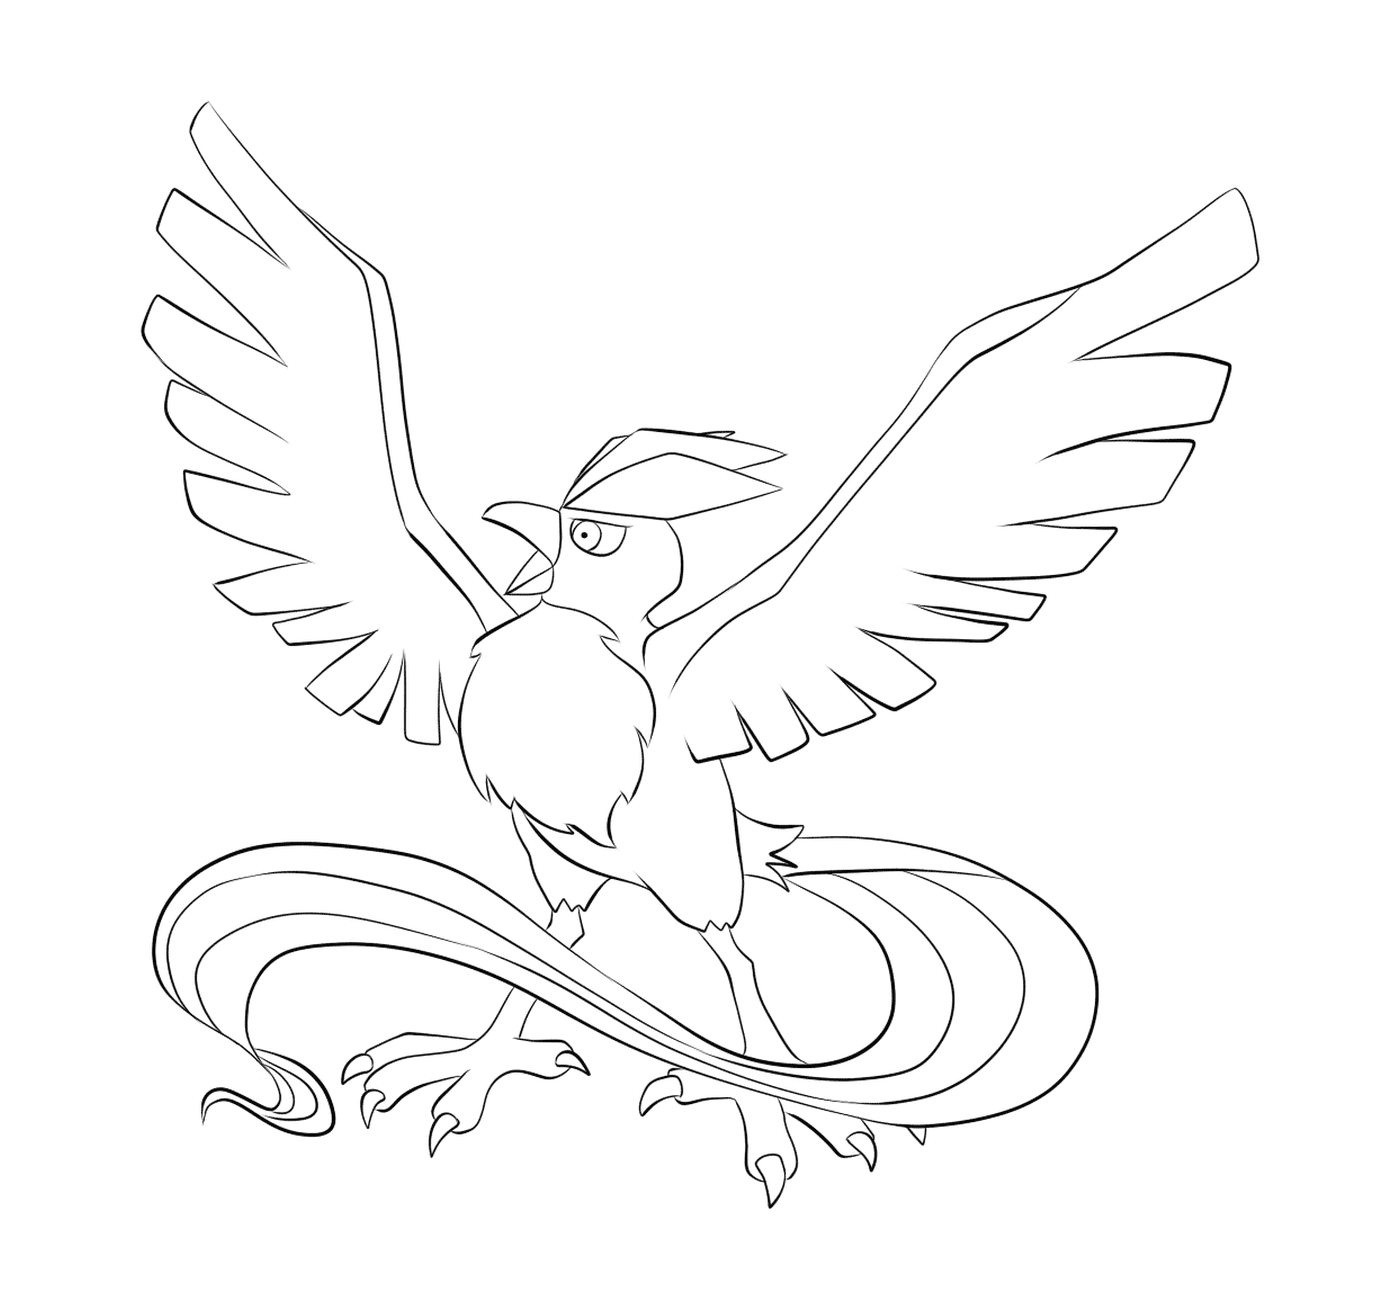   Artikodin oiseau avec ailes déployées 